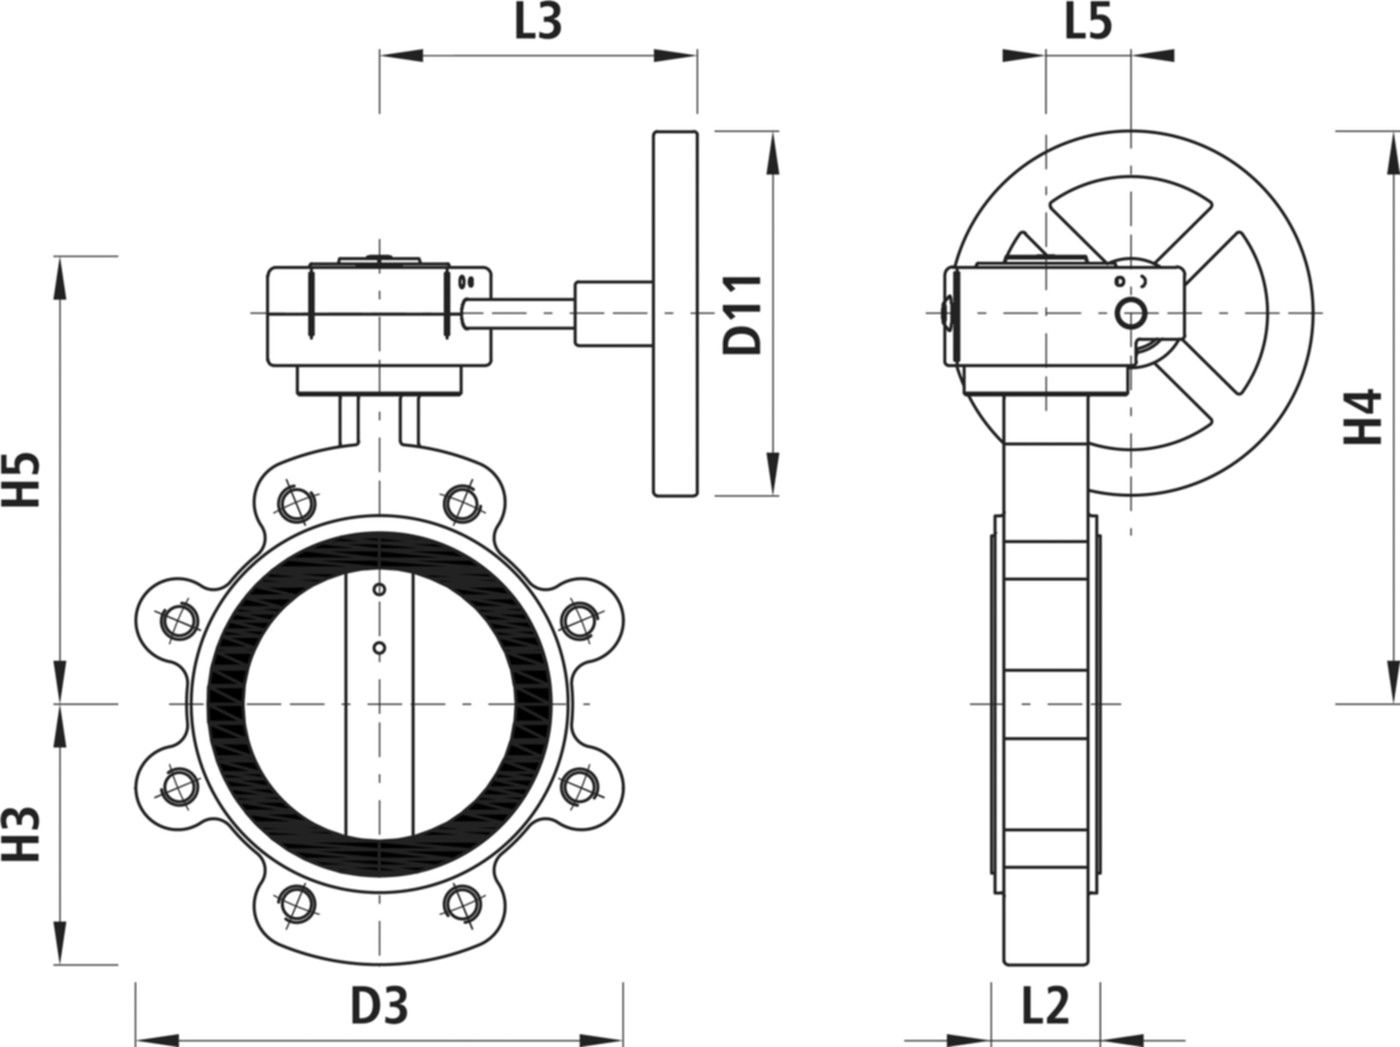 Absperrklappe mit Getriebe Typ LT 9937 für Gas DN 125 PN 16 - Hawle Absperrklappen